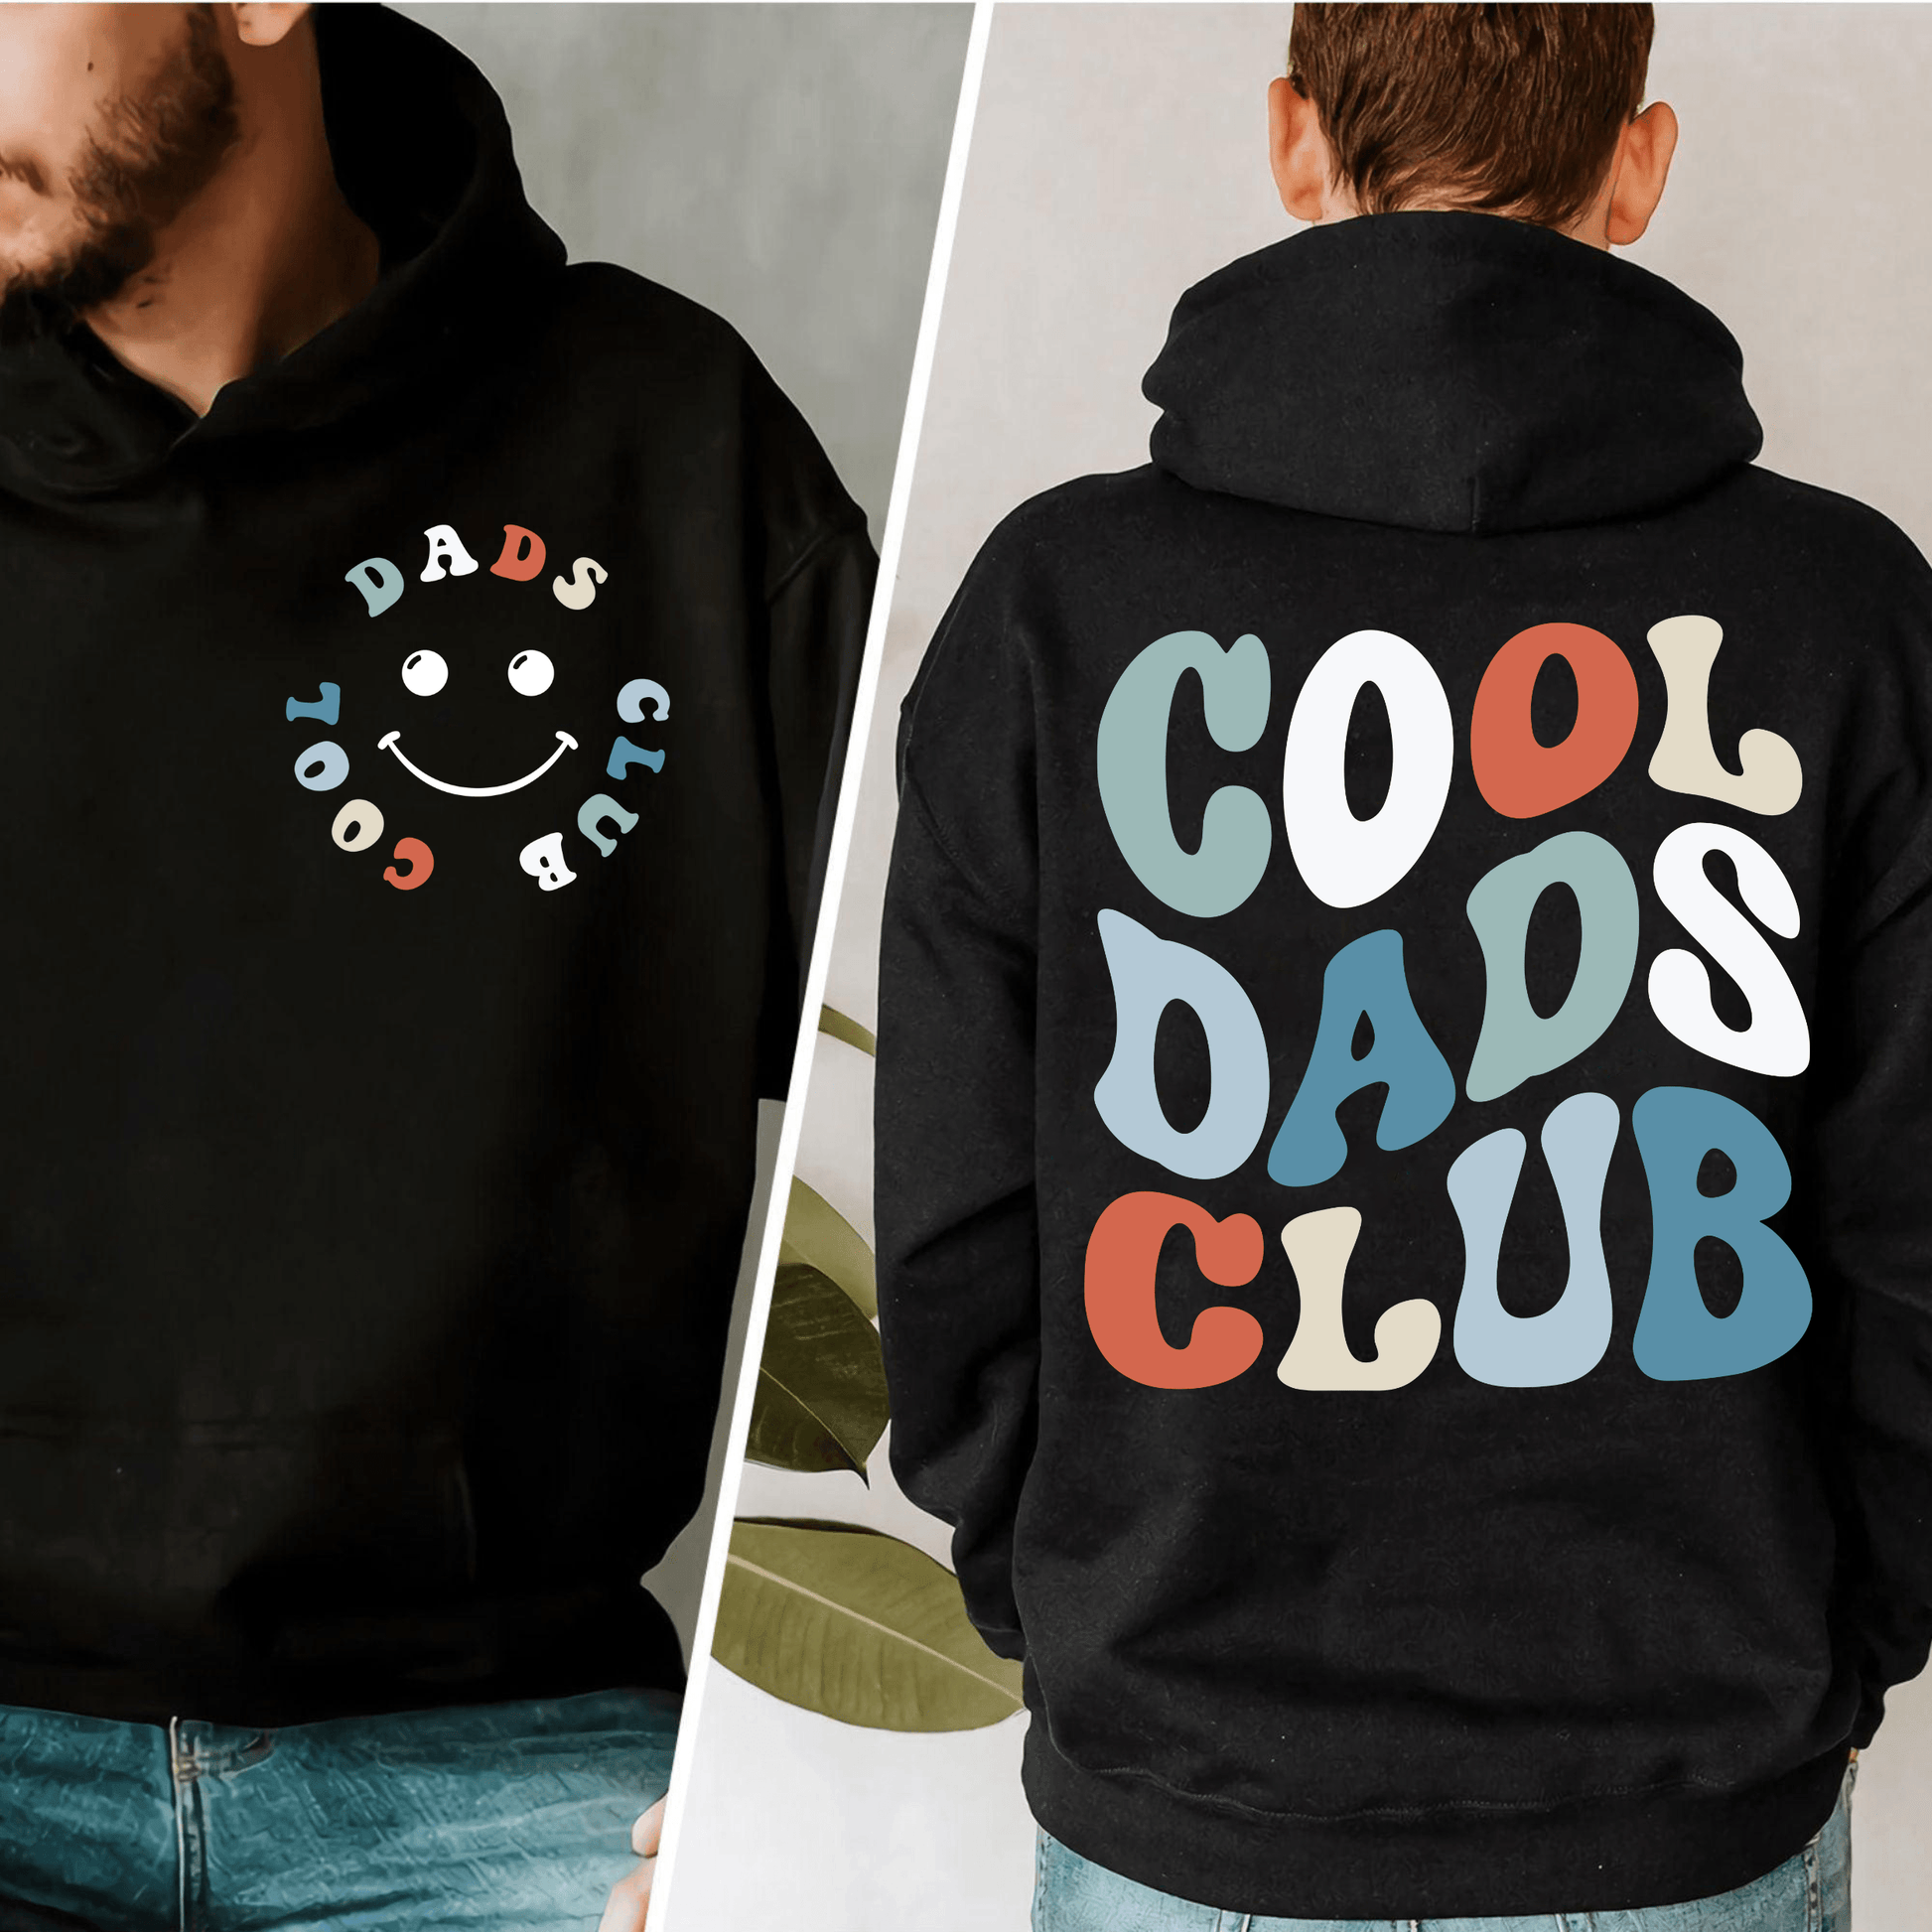 Cool Dad Club - Vatertagsgeschenk für stilvolle Väter - GiftHaus